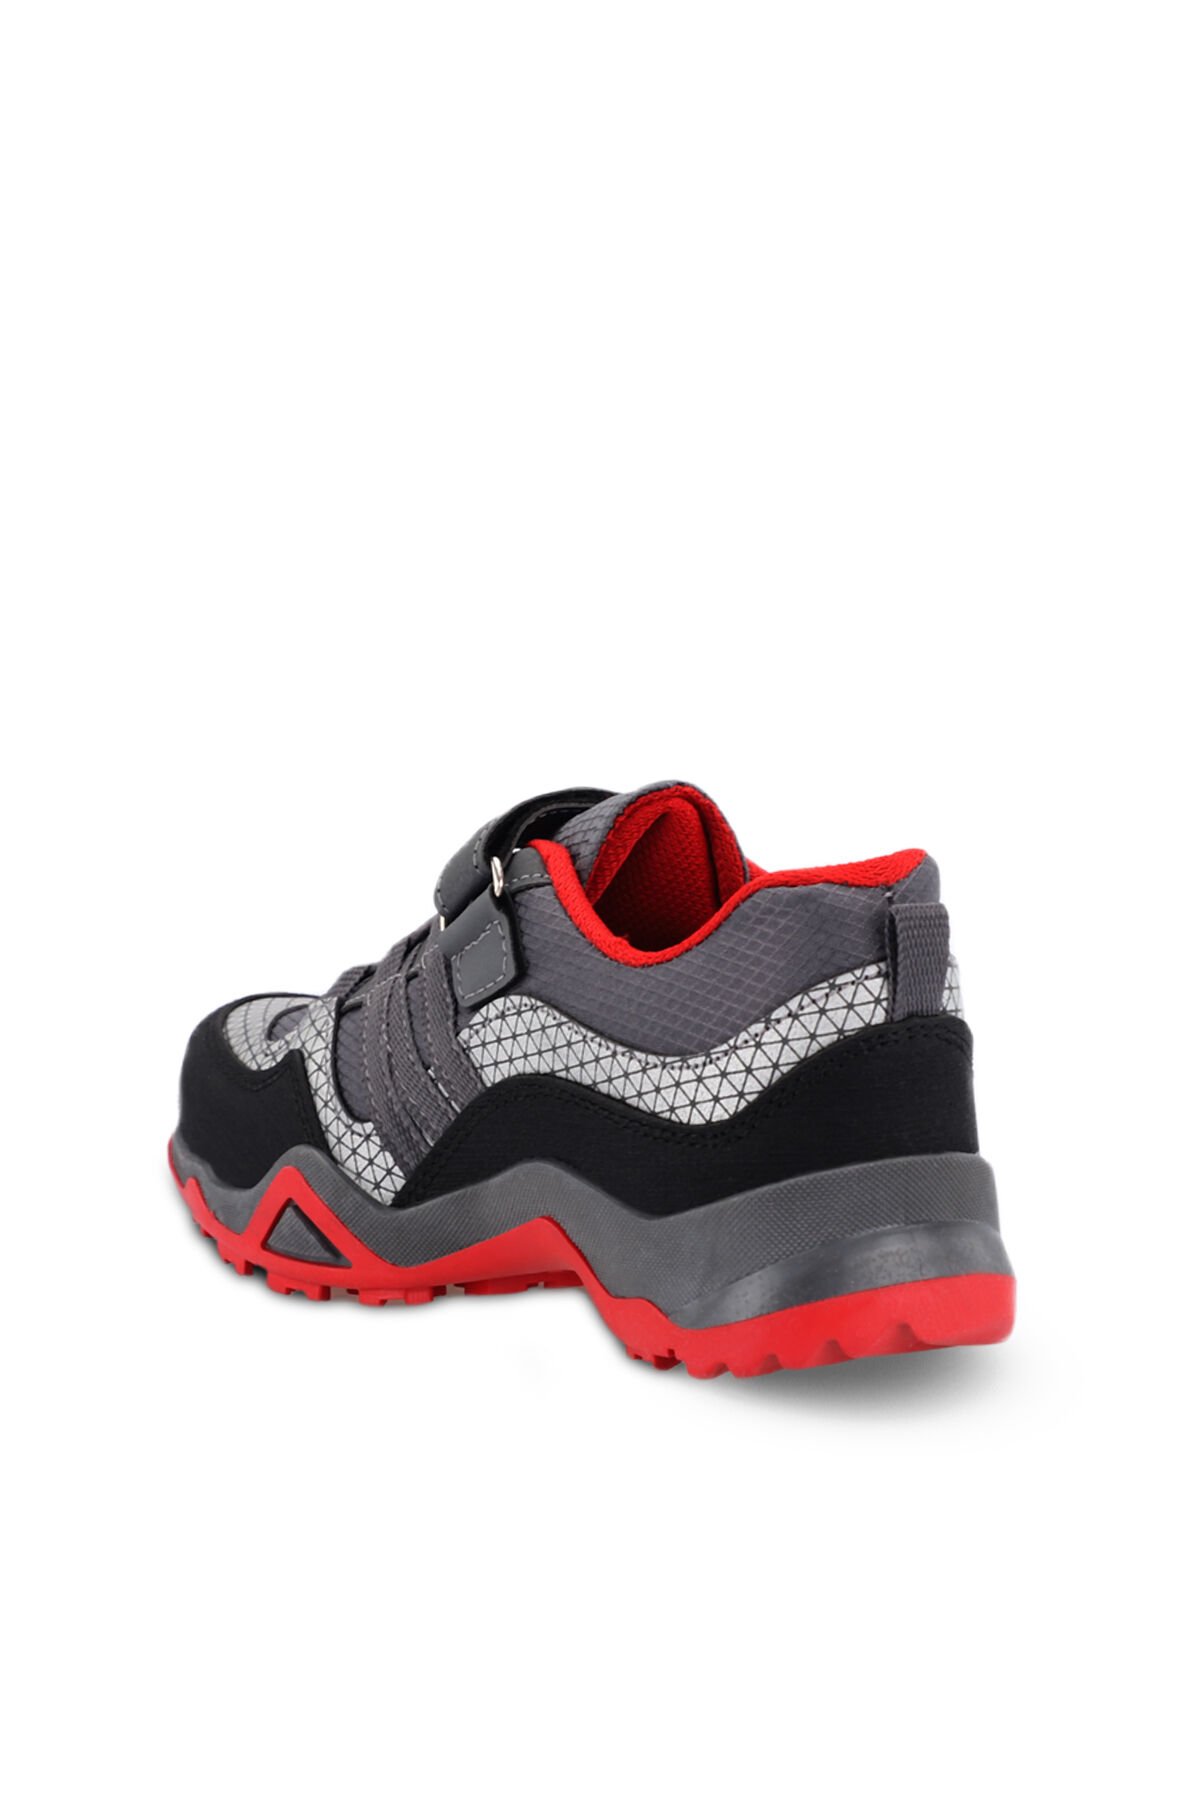 Slazenger ALDONA Sneaker Erkek Çocuk Ayakkabı Koyu Gri / Siyah - Thumbnail